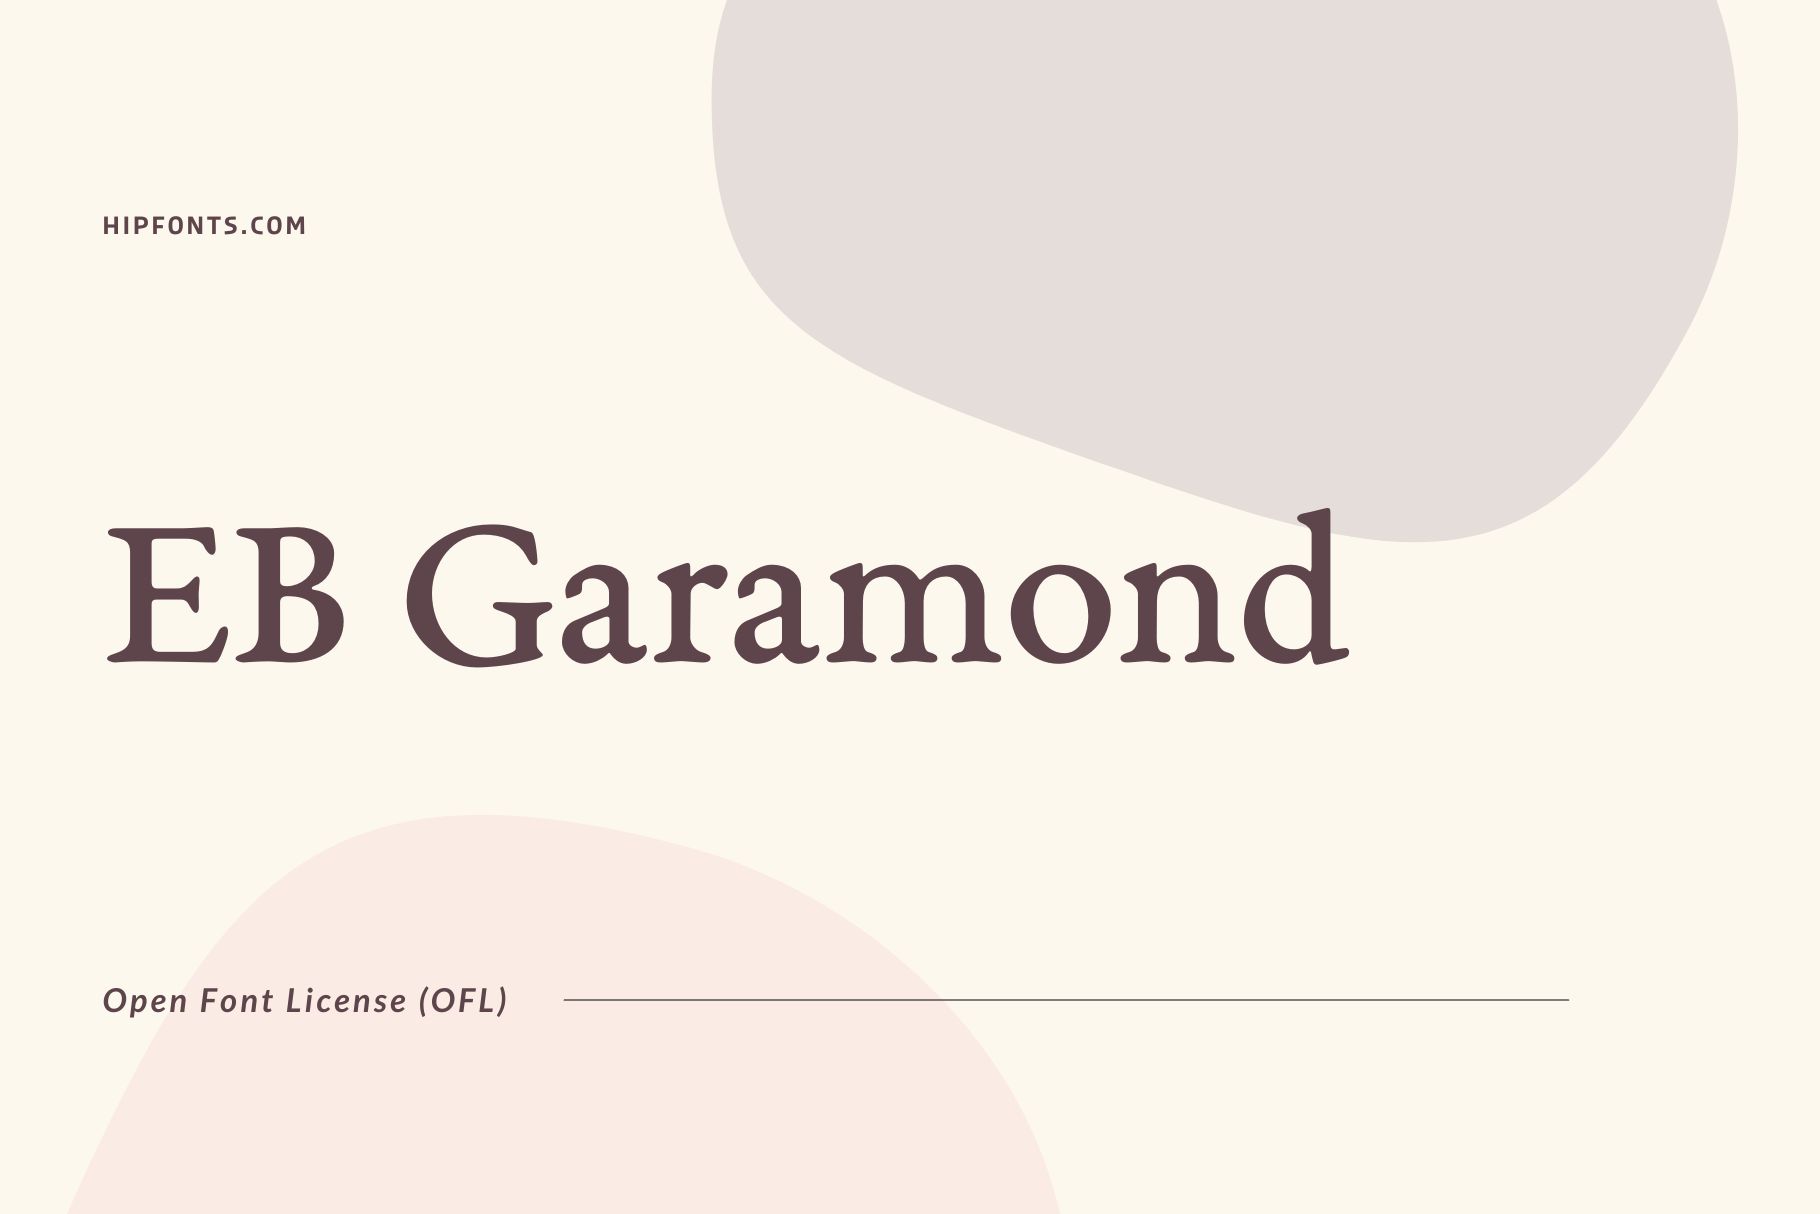 EB Garamond free font